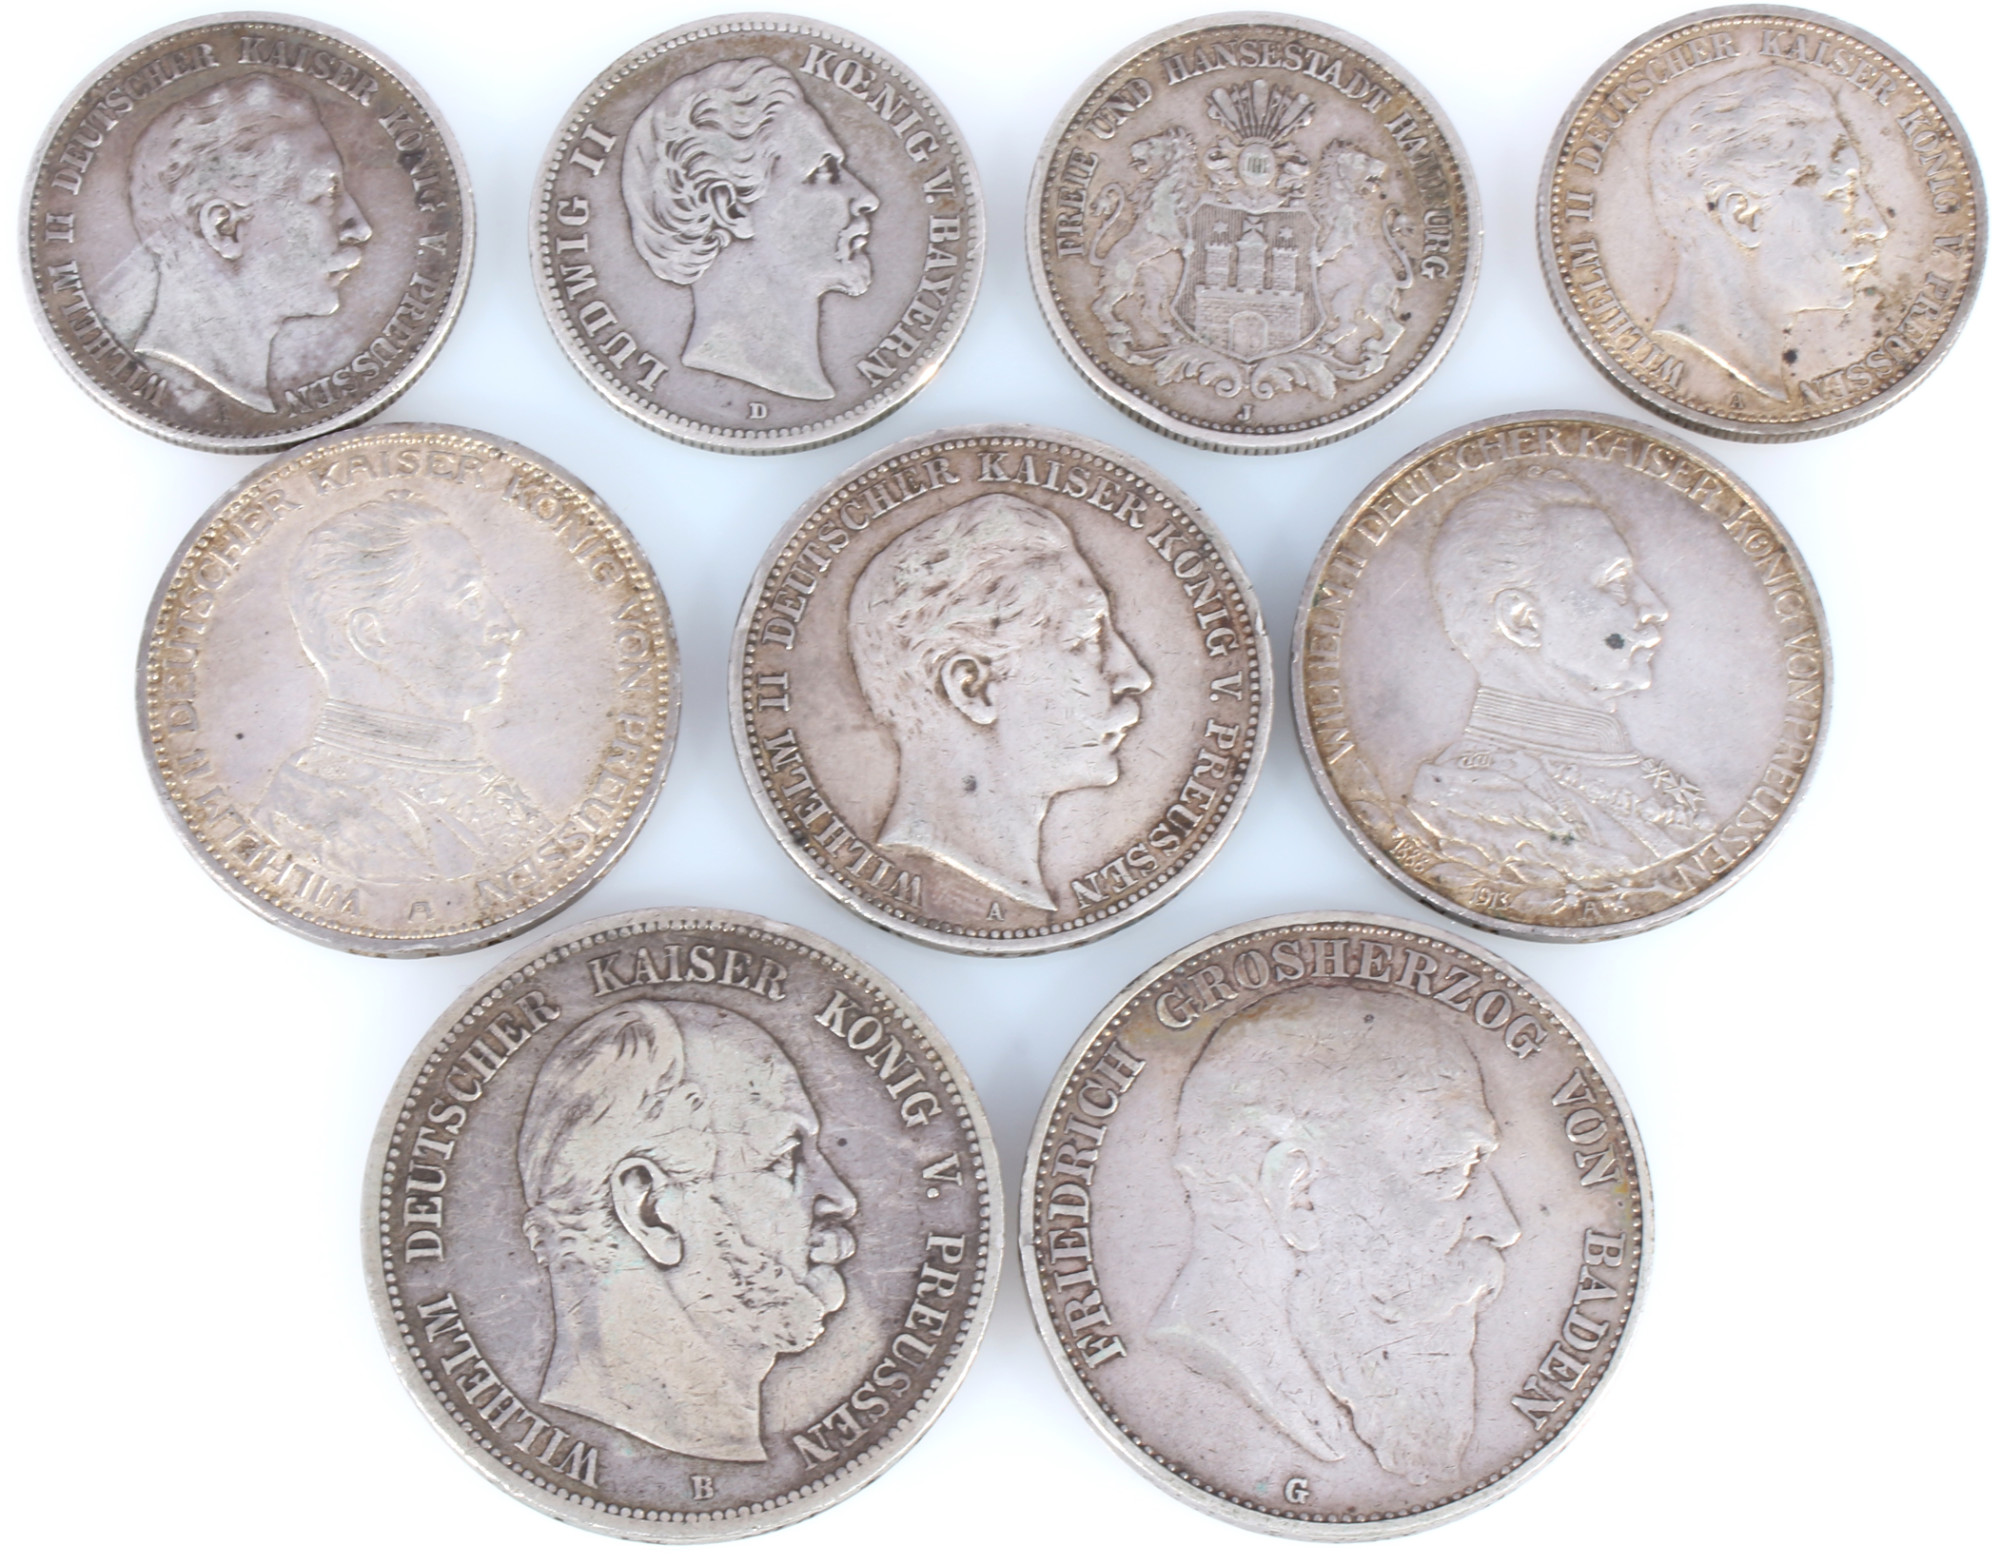 9 silver coins - Deutsche Mark 1875-1914 german empire, Silbermünzen Kaiserreich,